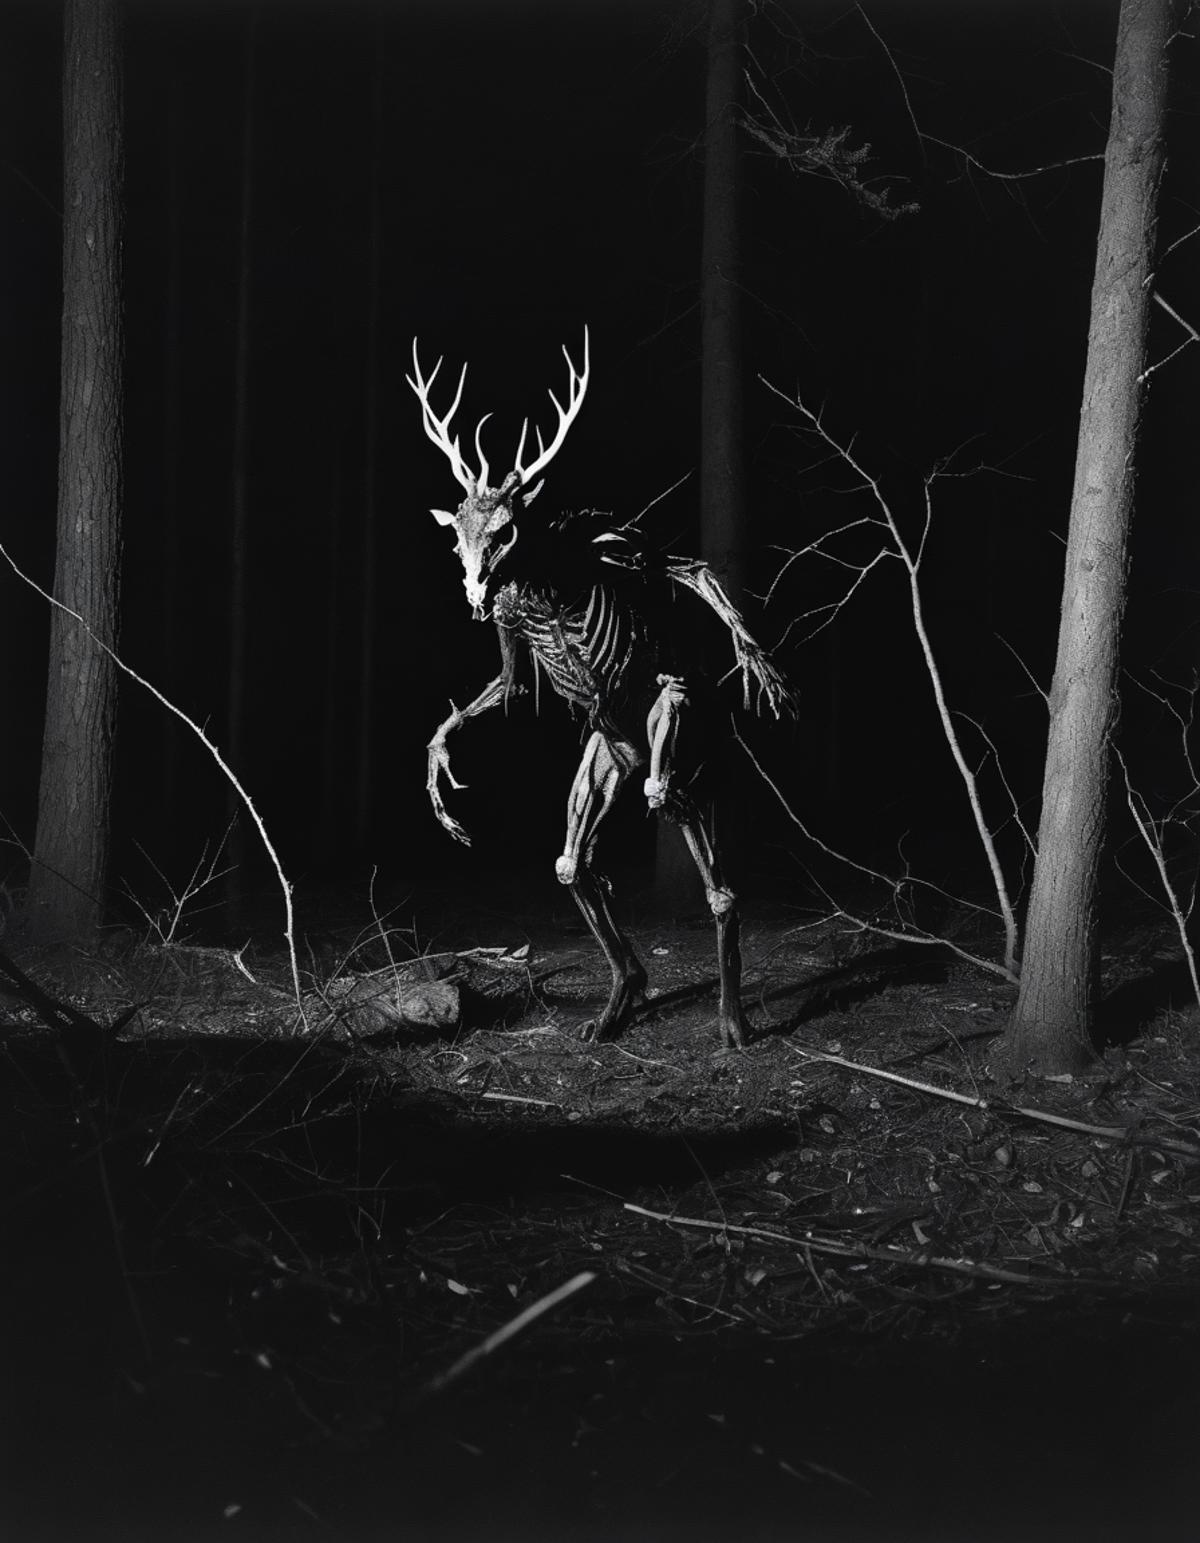 A skeletal deer with antlers walking in a dark forest.